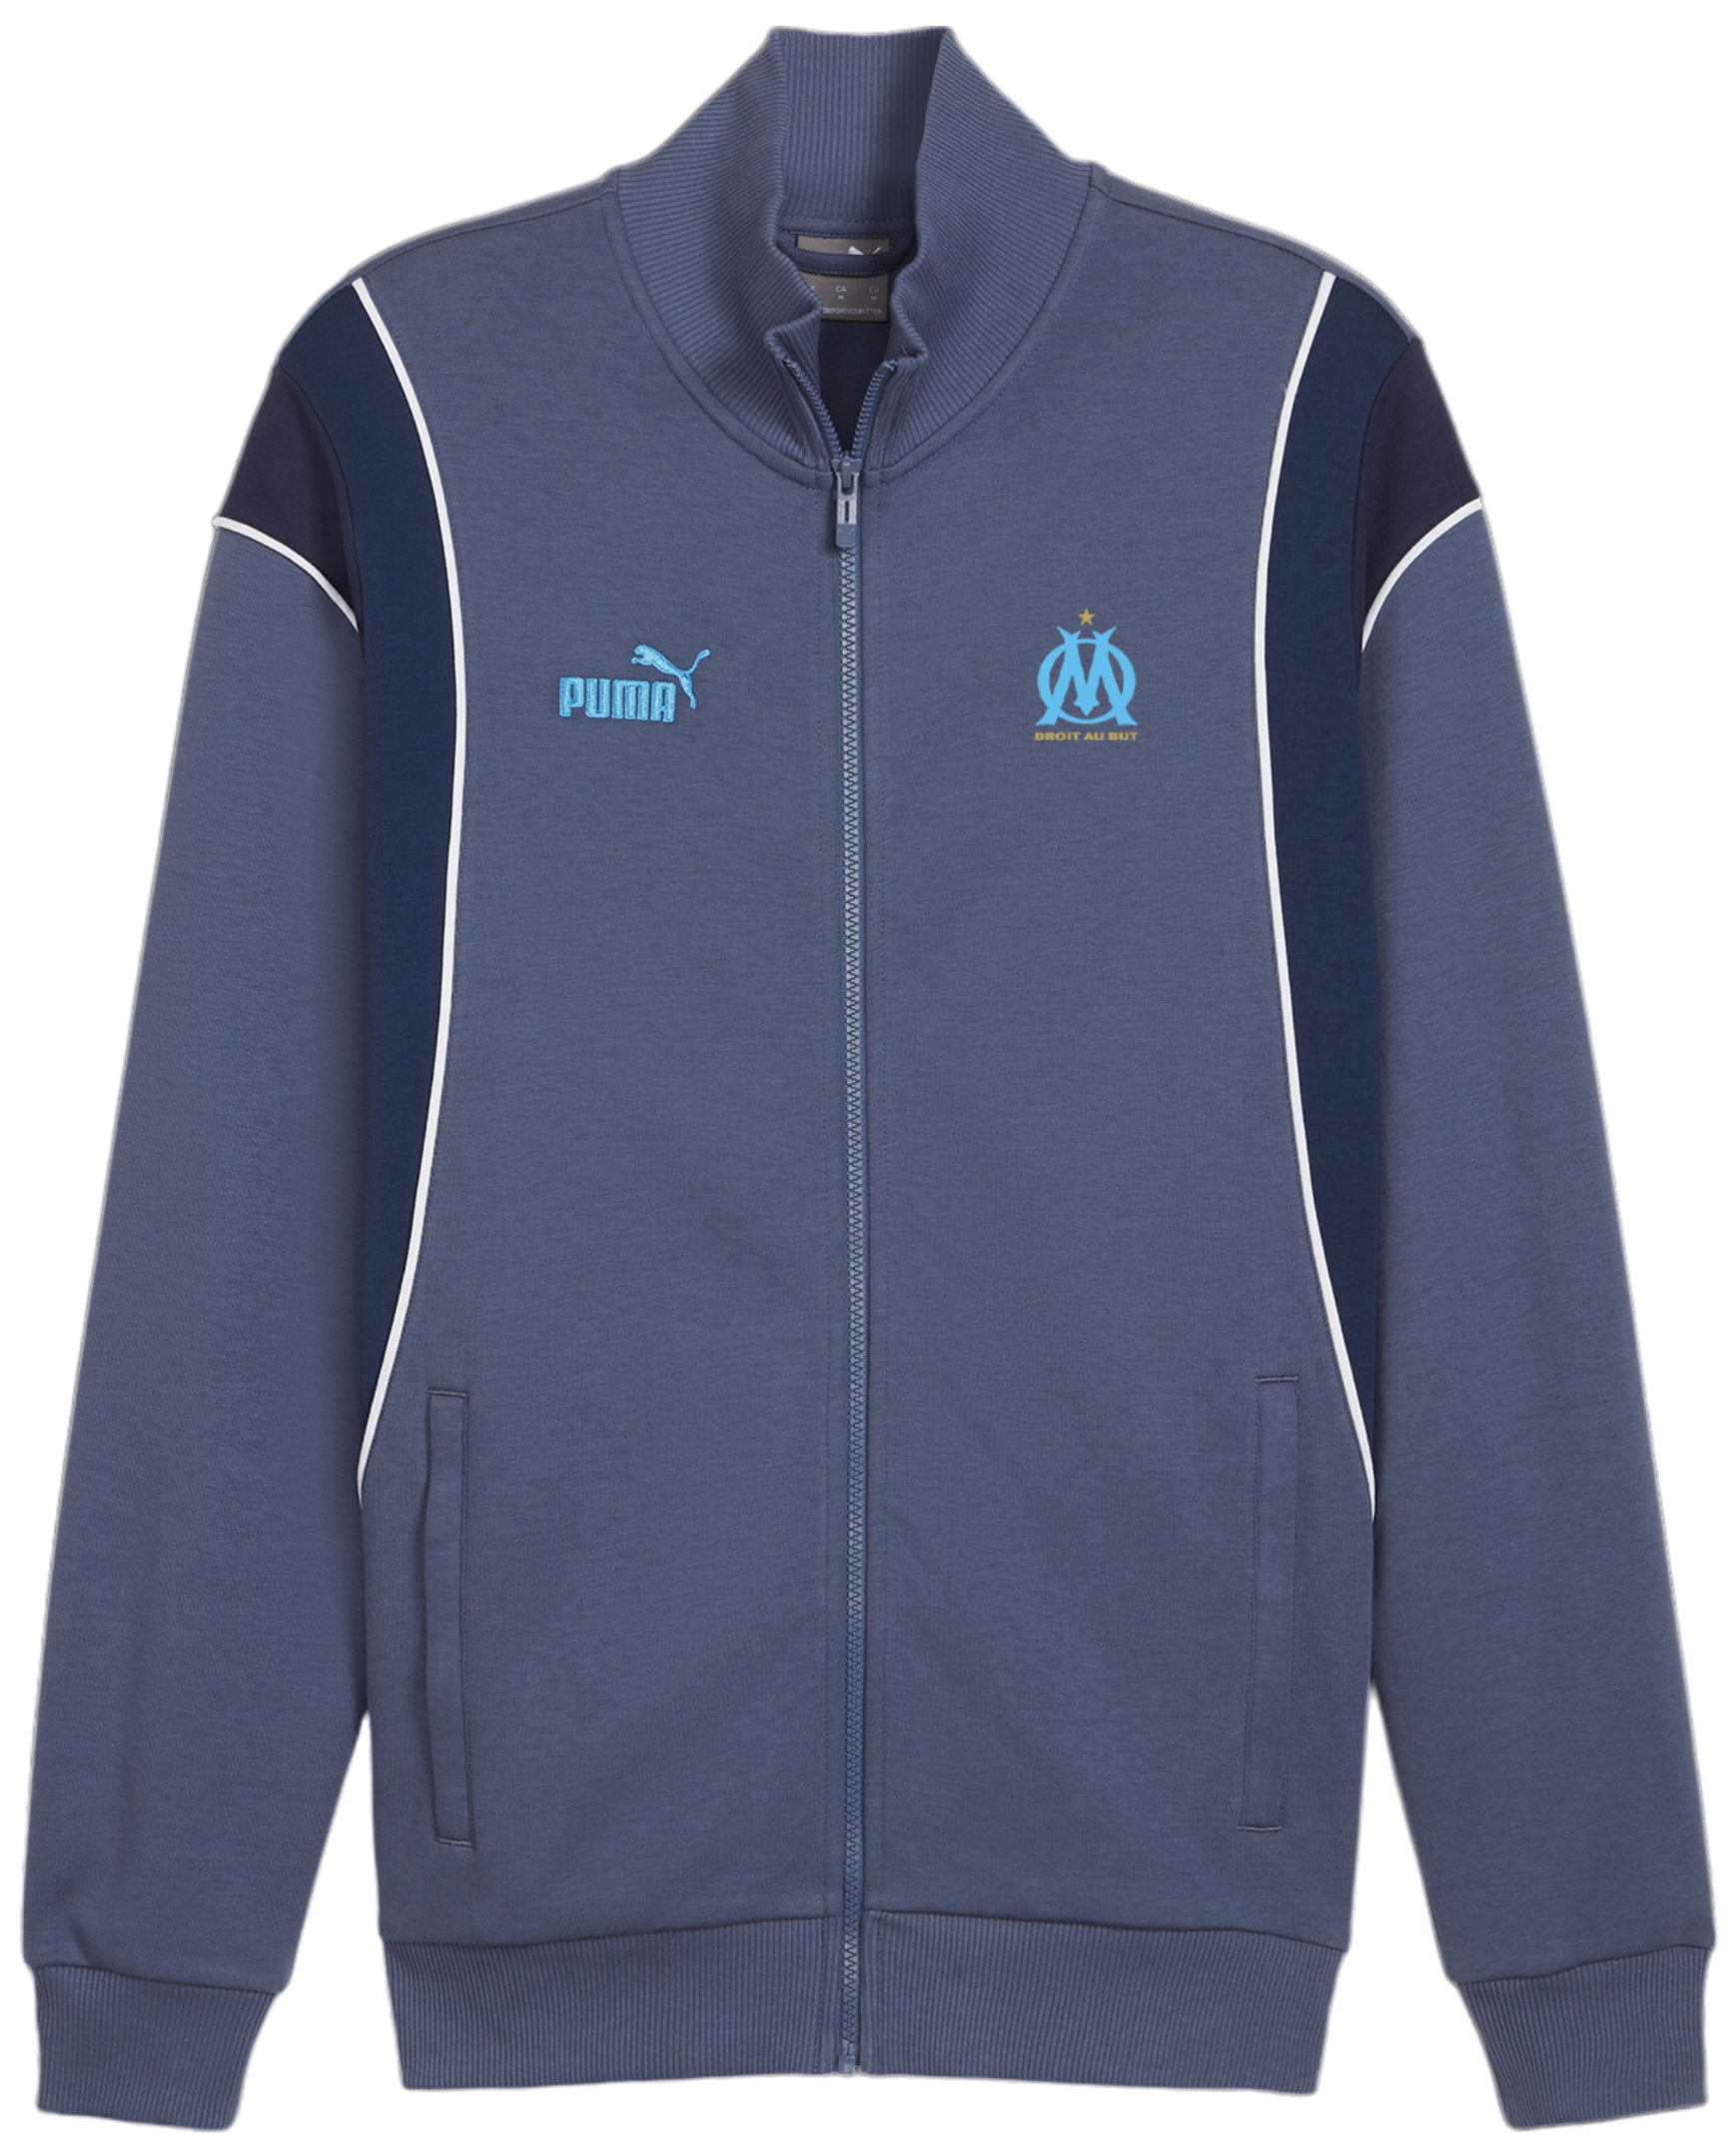 Jack Puma Olympique Marseille Ftbl Trainings jacket